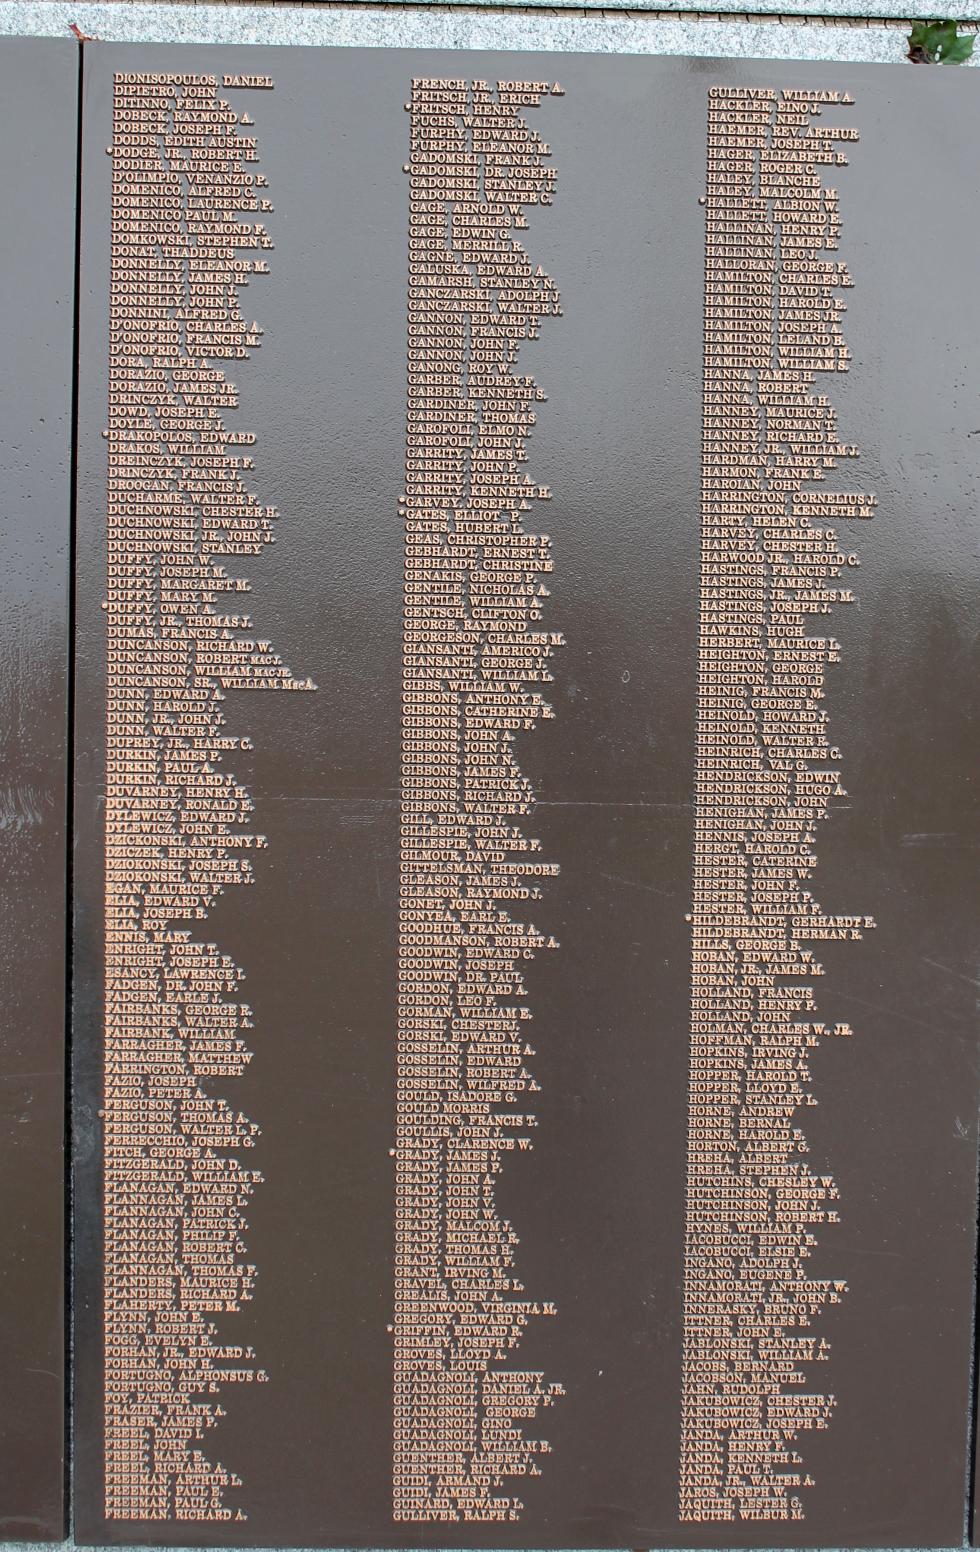 Clinton Massachusetts World War II Veterans Memorial